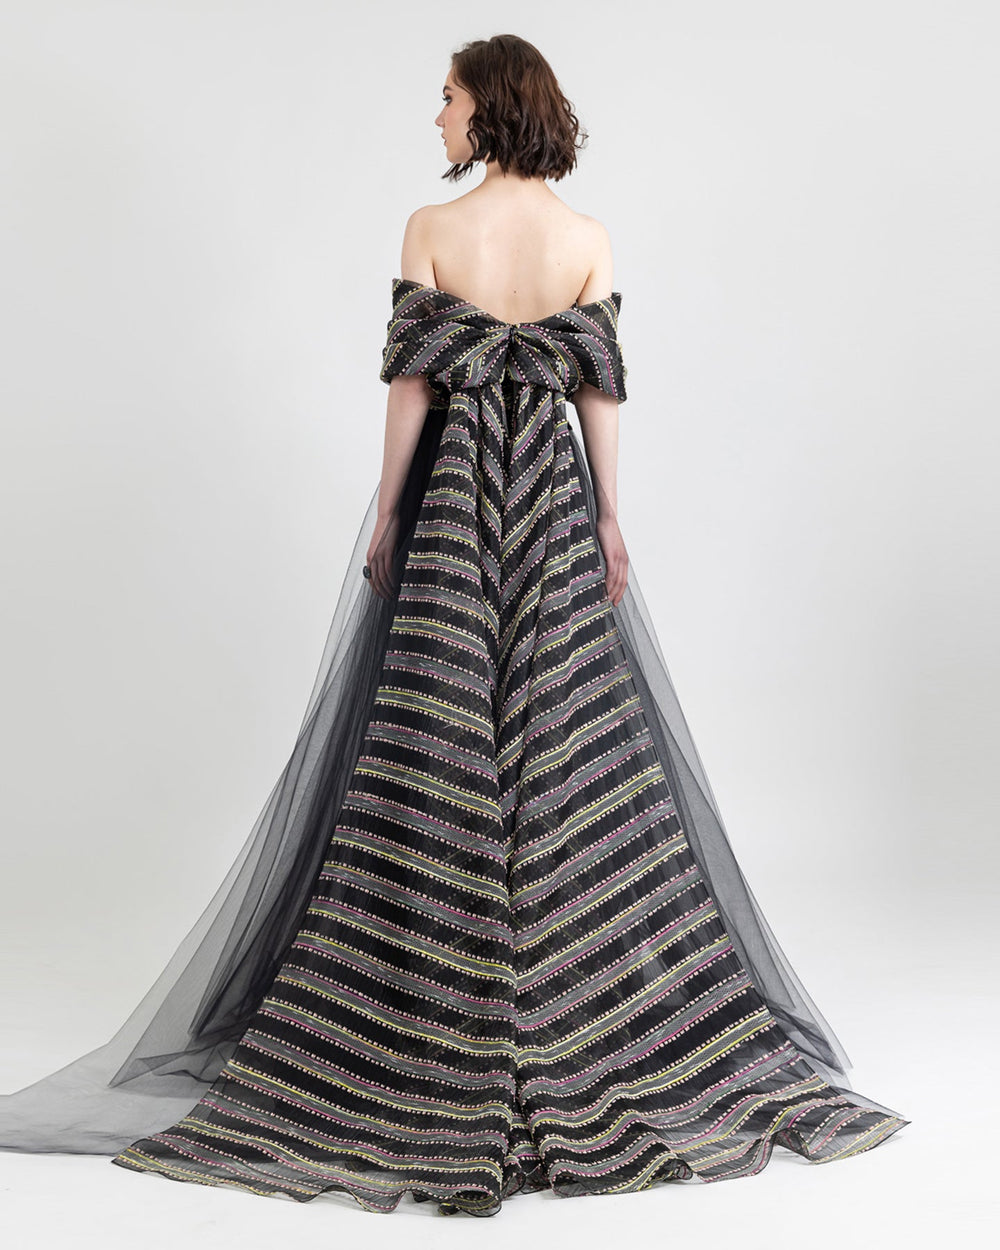 serena-bridal-corset-by-vanyanis-modeled-by-stefania-ferrario - Vanyanis